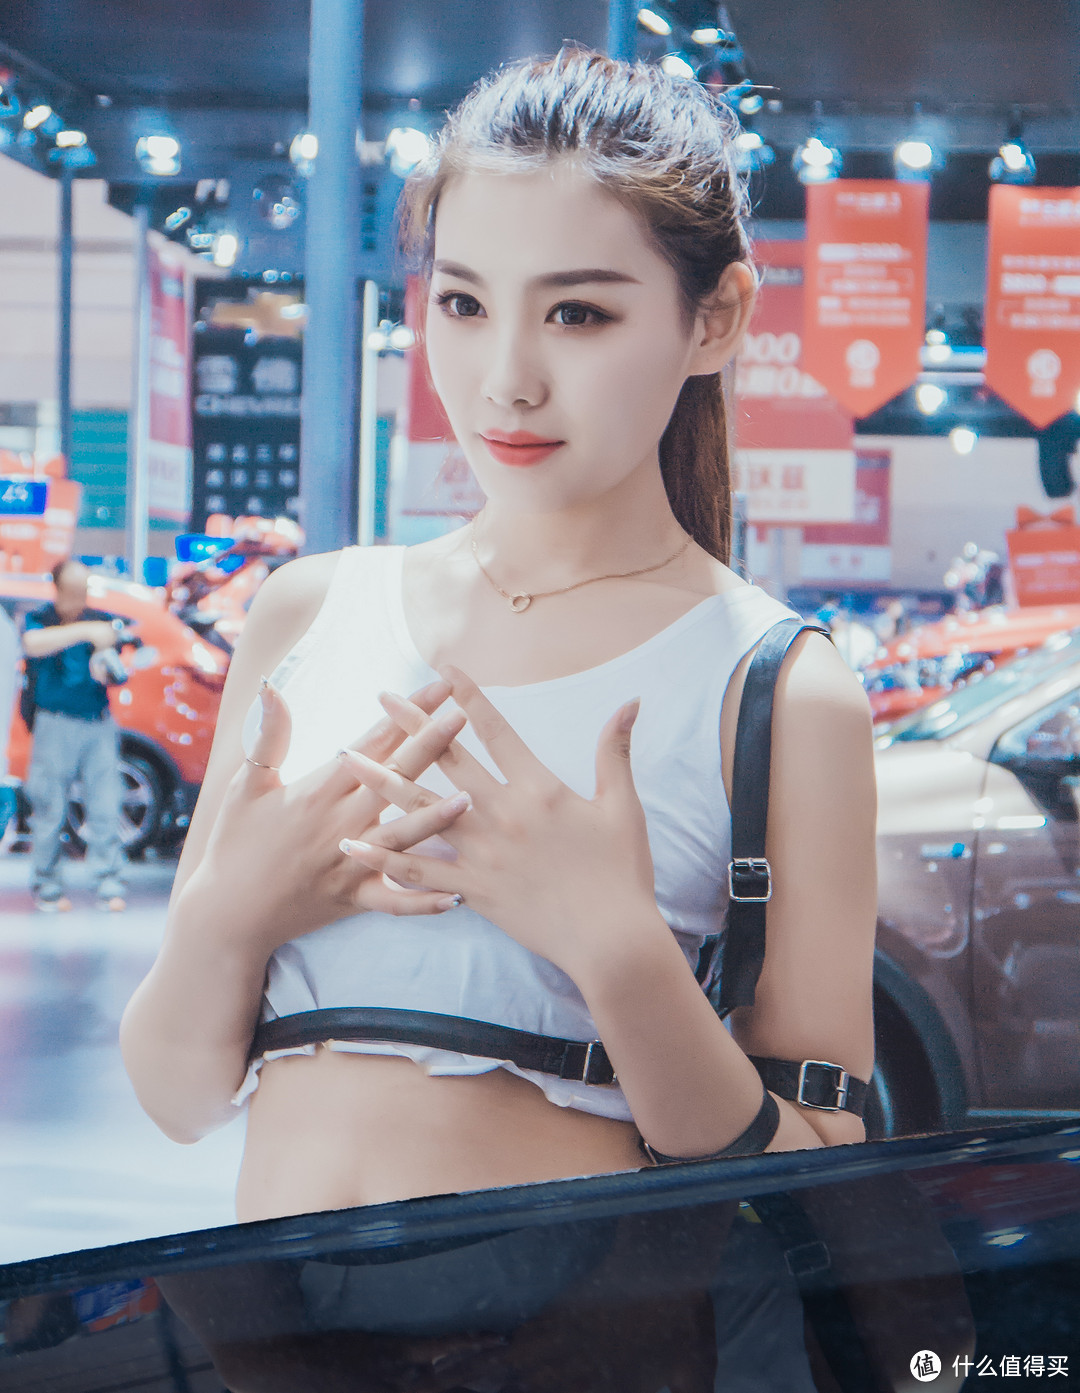 ”8打了逛2018华中国际汽车展的名号，当然是为了看这些...给你个眼神自己领会